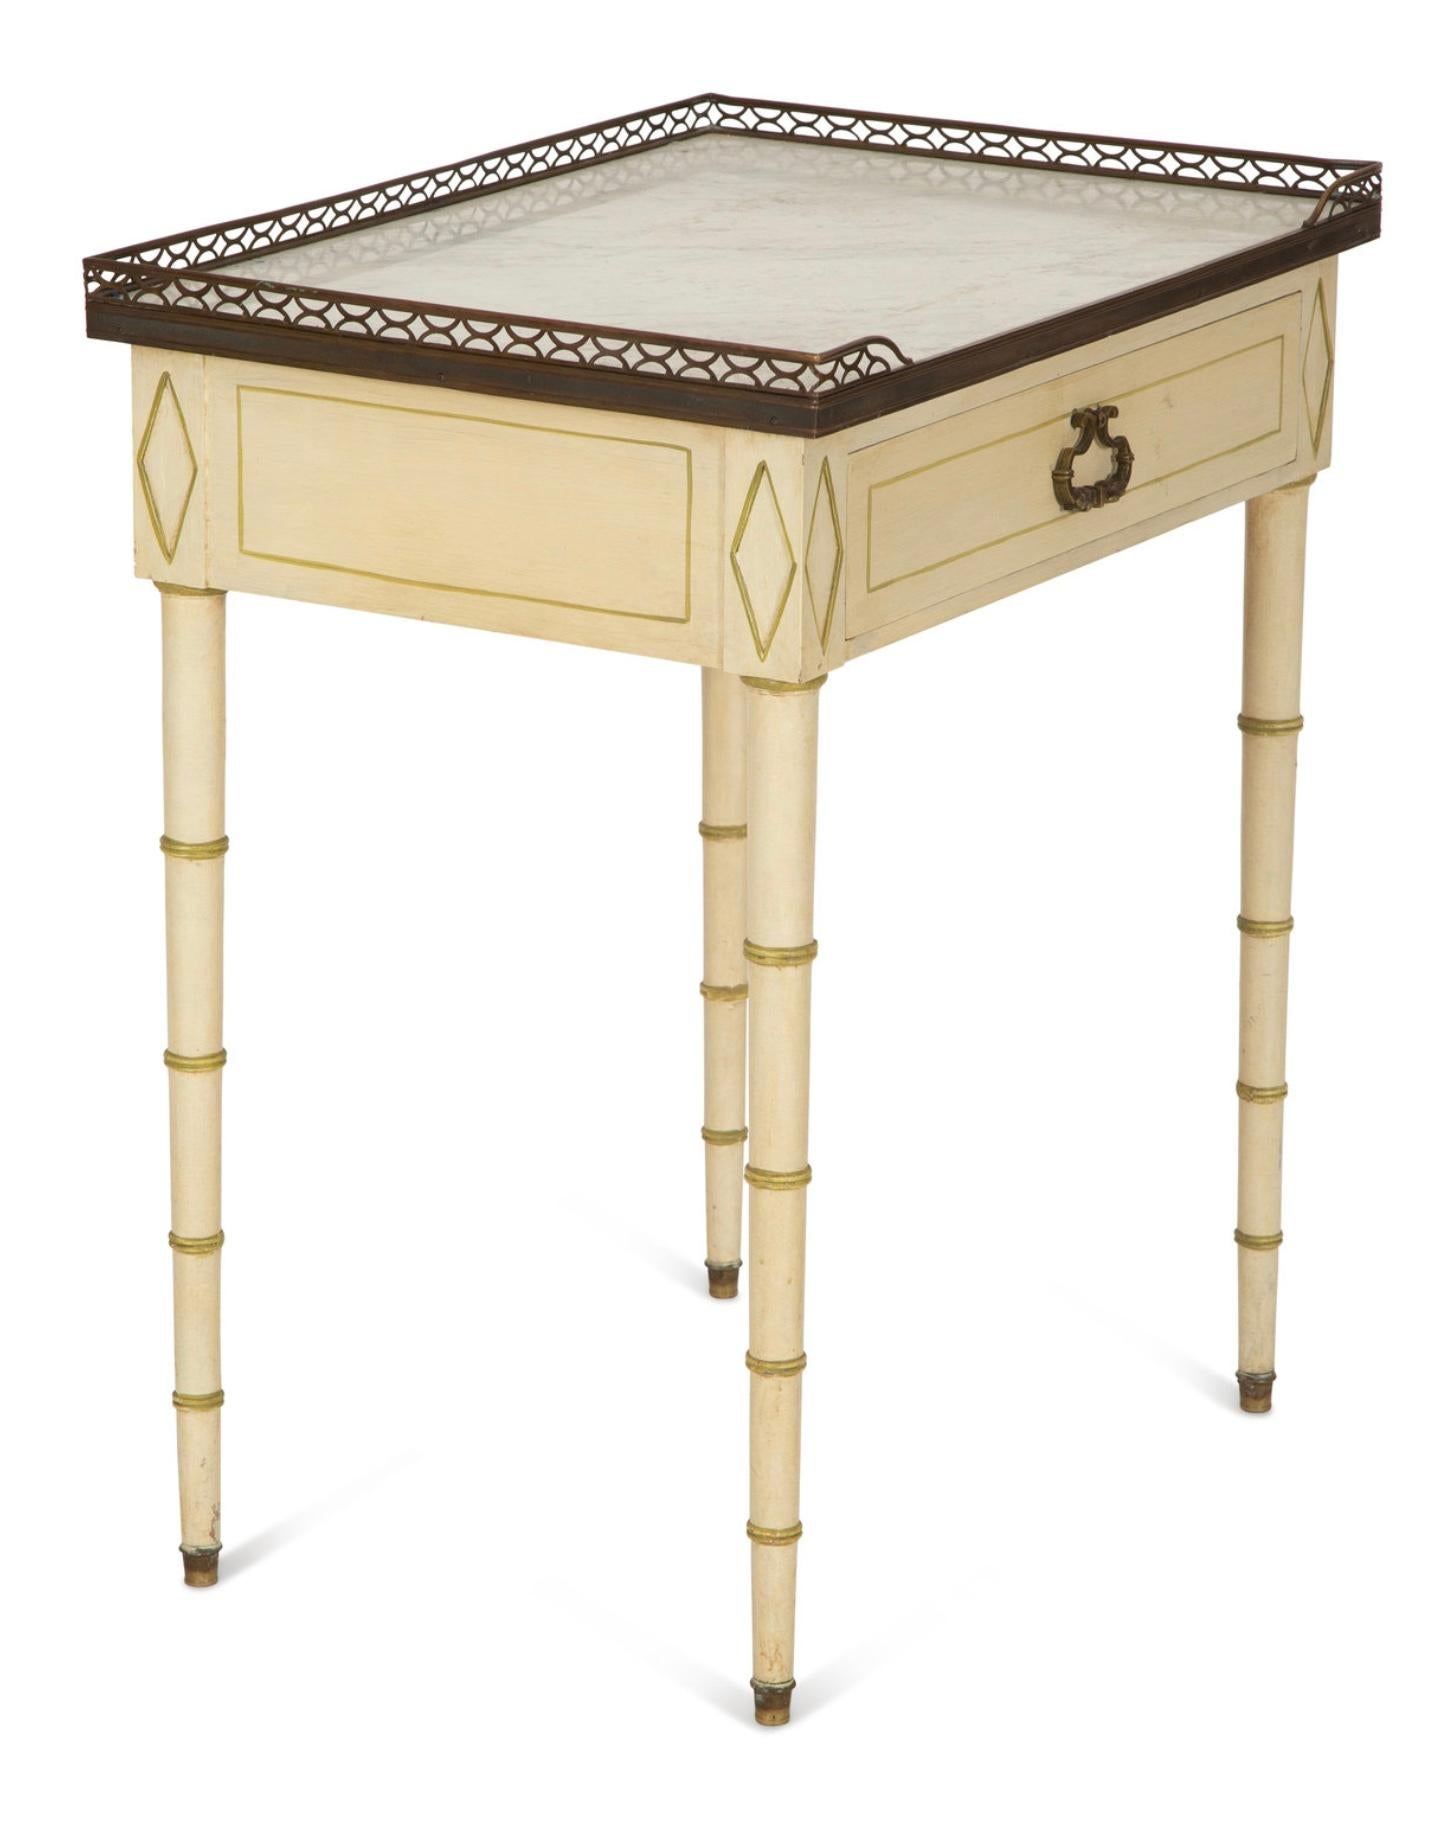 Table d'appoint de style Régence française inspirée du faux bambou. Table d'appoint peinte avec plateau galerie trois quarts en laiton avec insert en marbre de Carrare. 